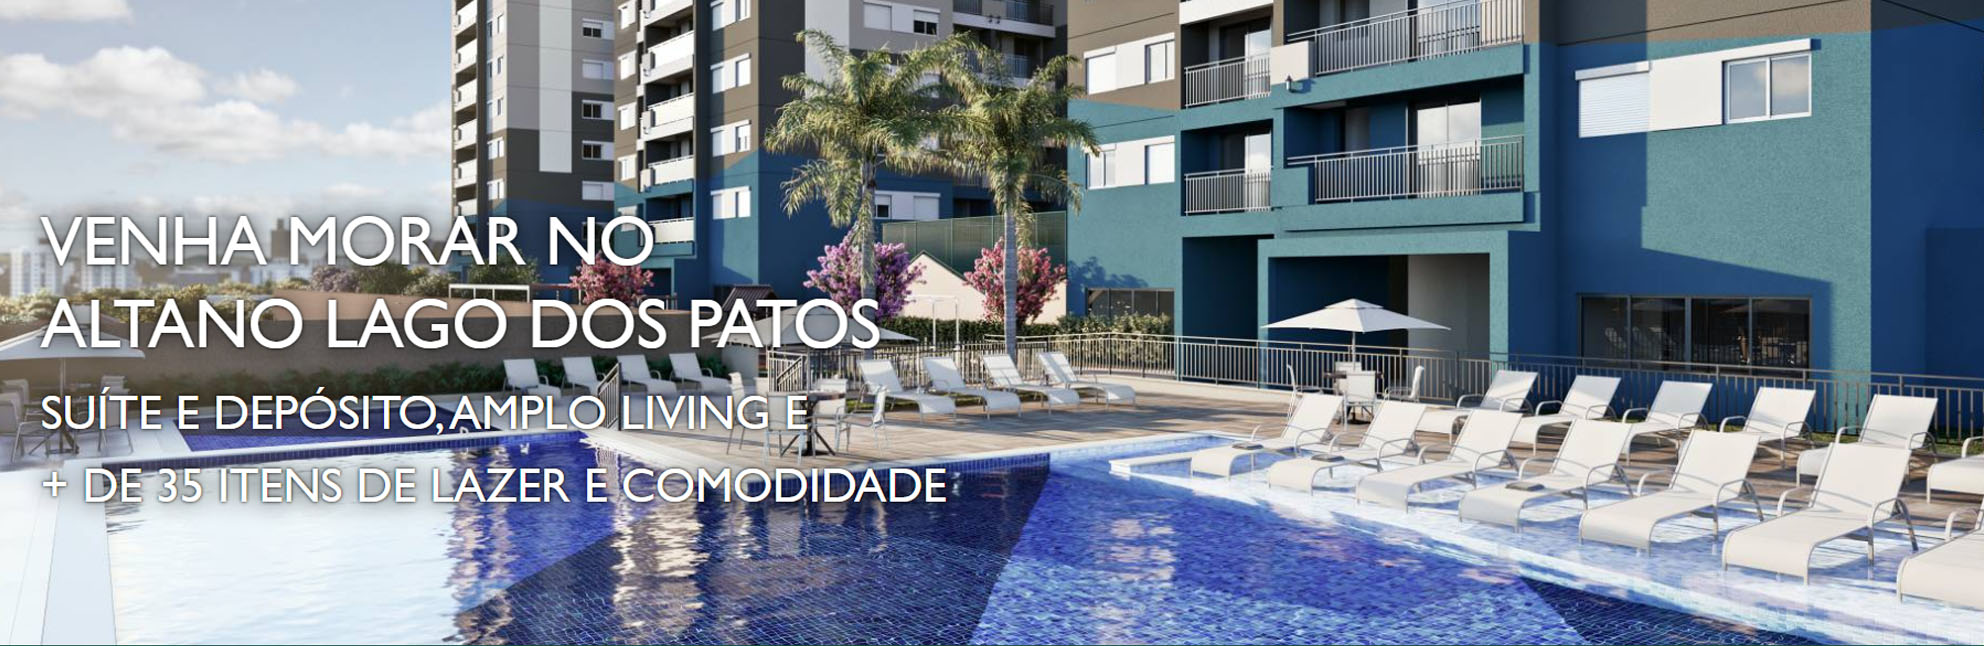 Lançamento INCORFAST Altano Lago dos Patos - Compre seu novo apartamento na planta a partir de R$235.000,00